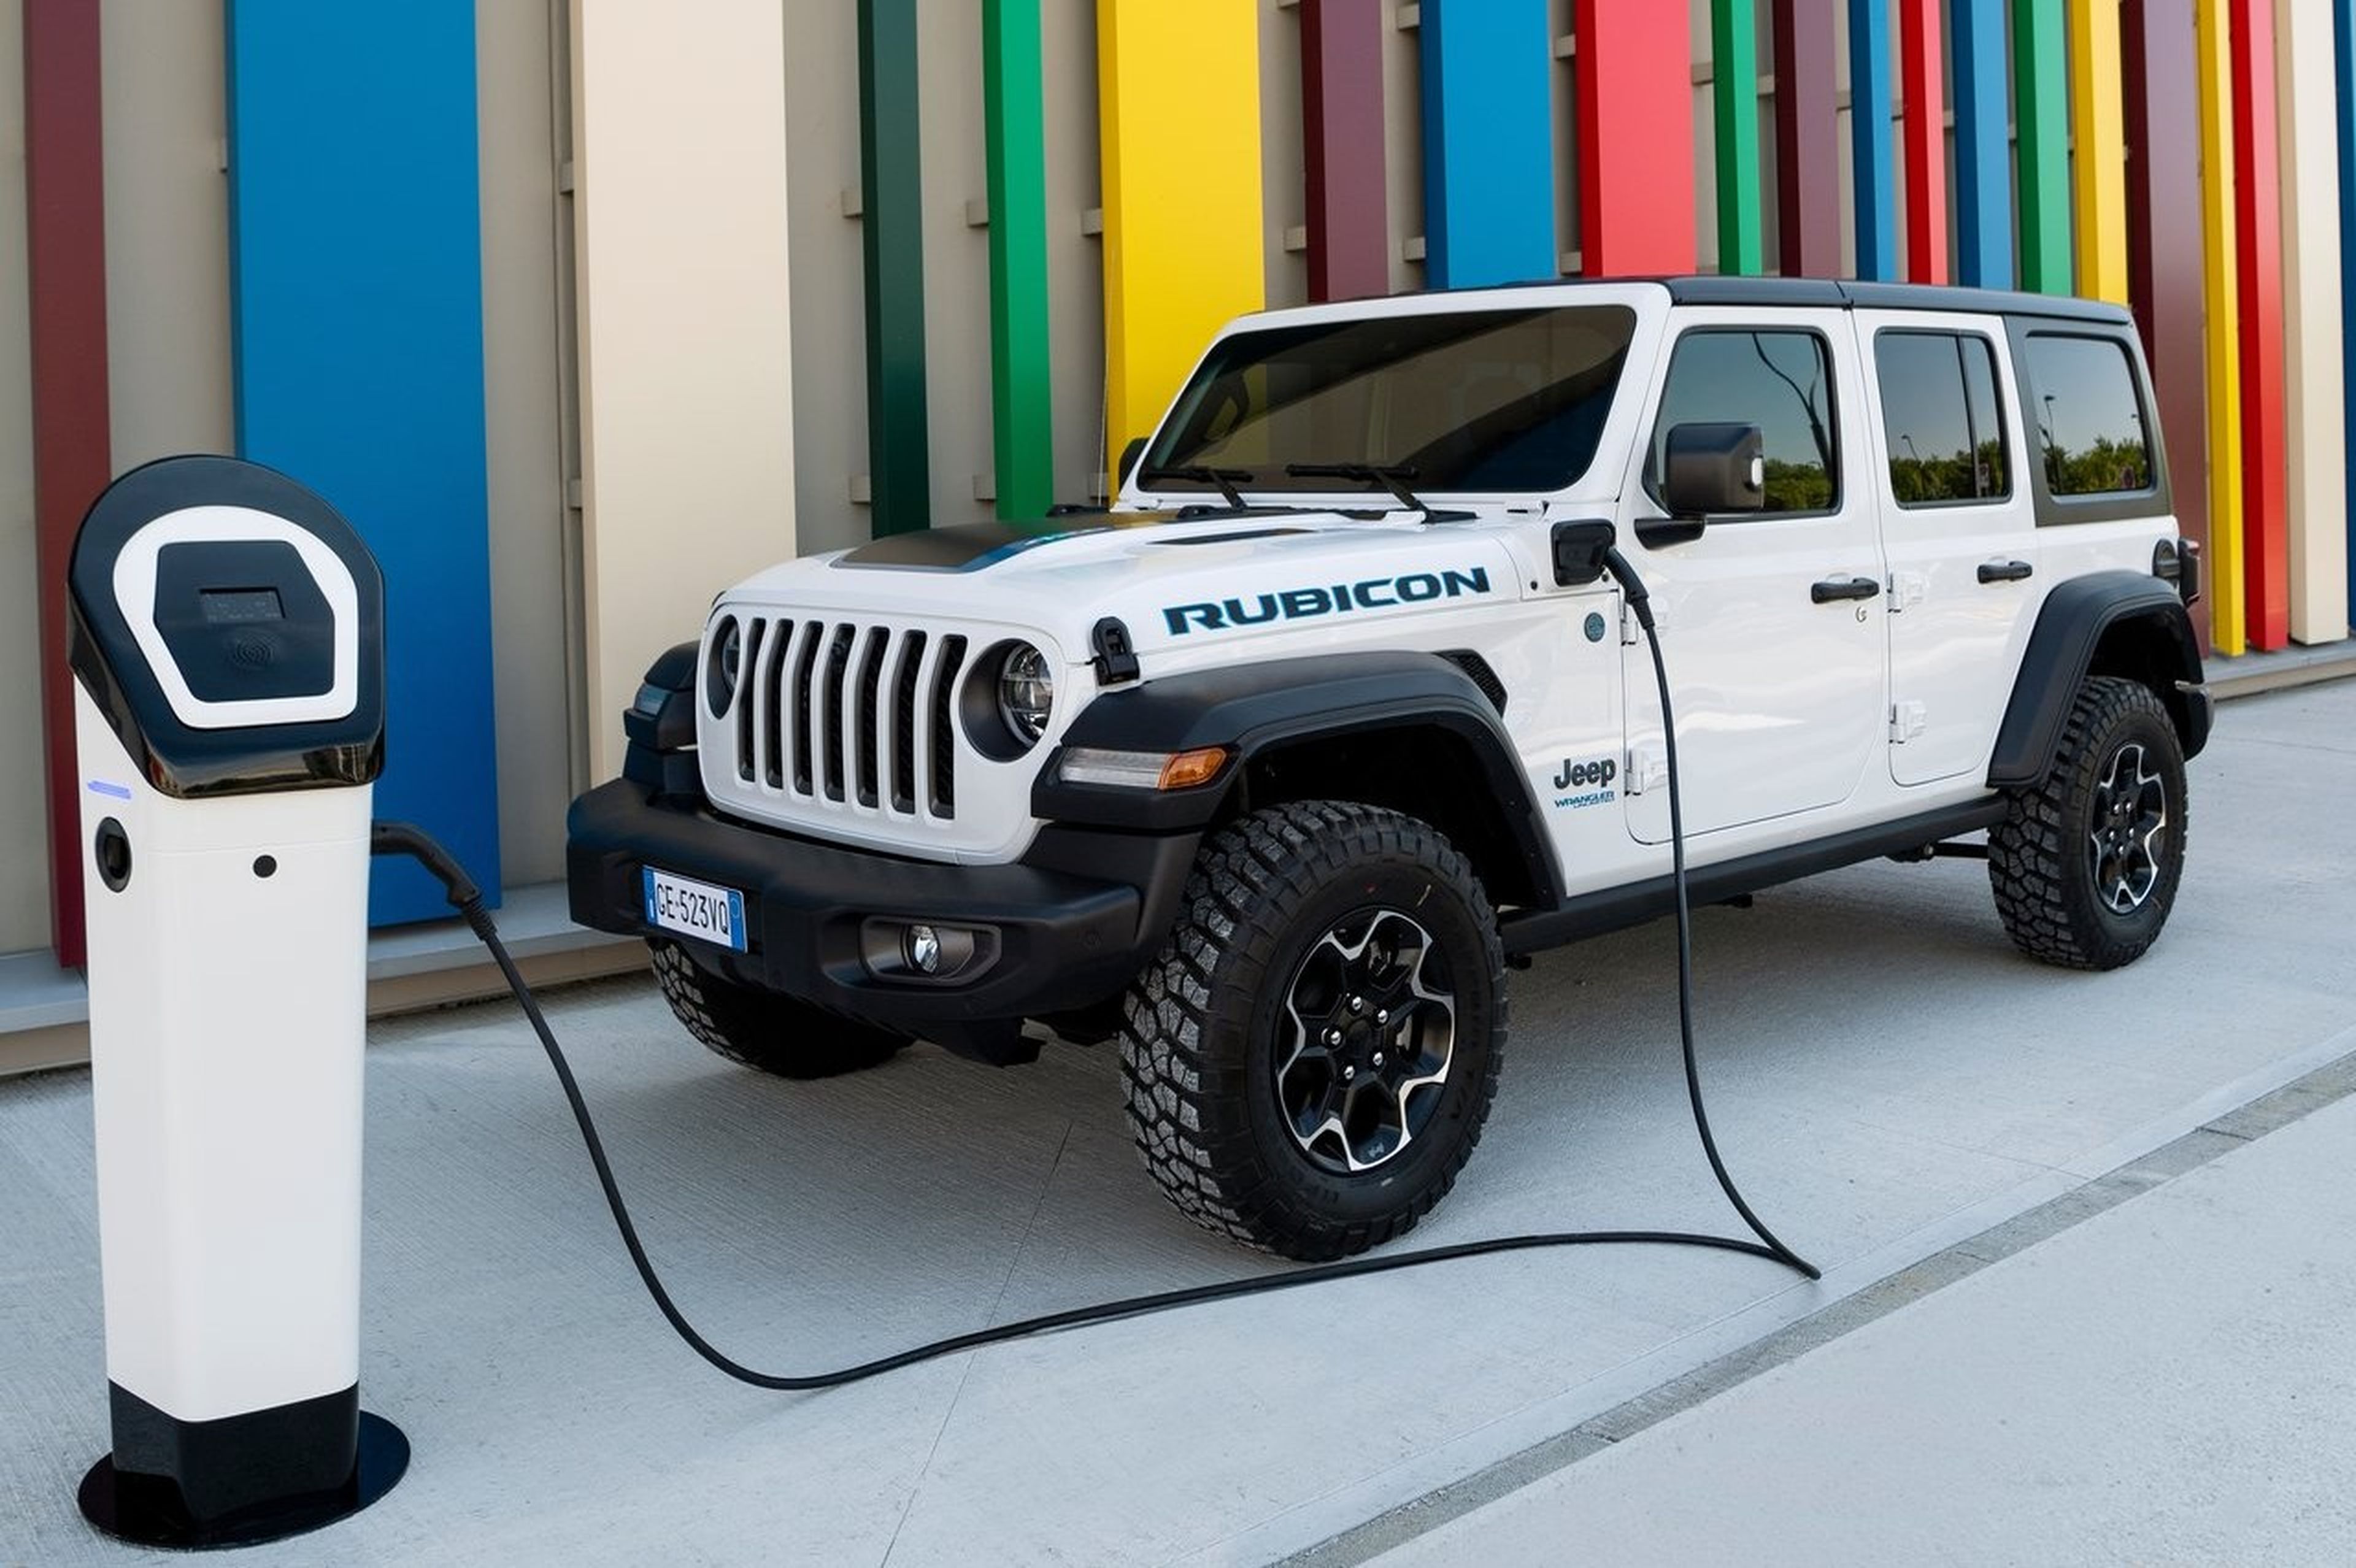 Jabón regalo Movilizar Jeep Wrangler, puntos fuertes y alguno débil de cara a una posible compra |  Auto Bild España